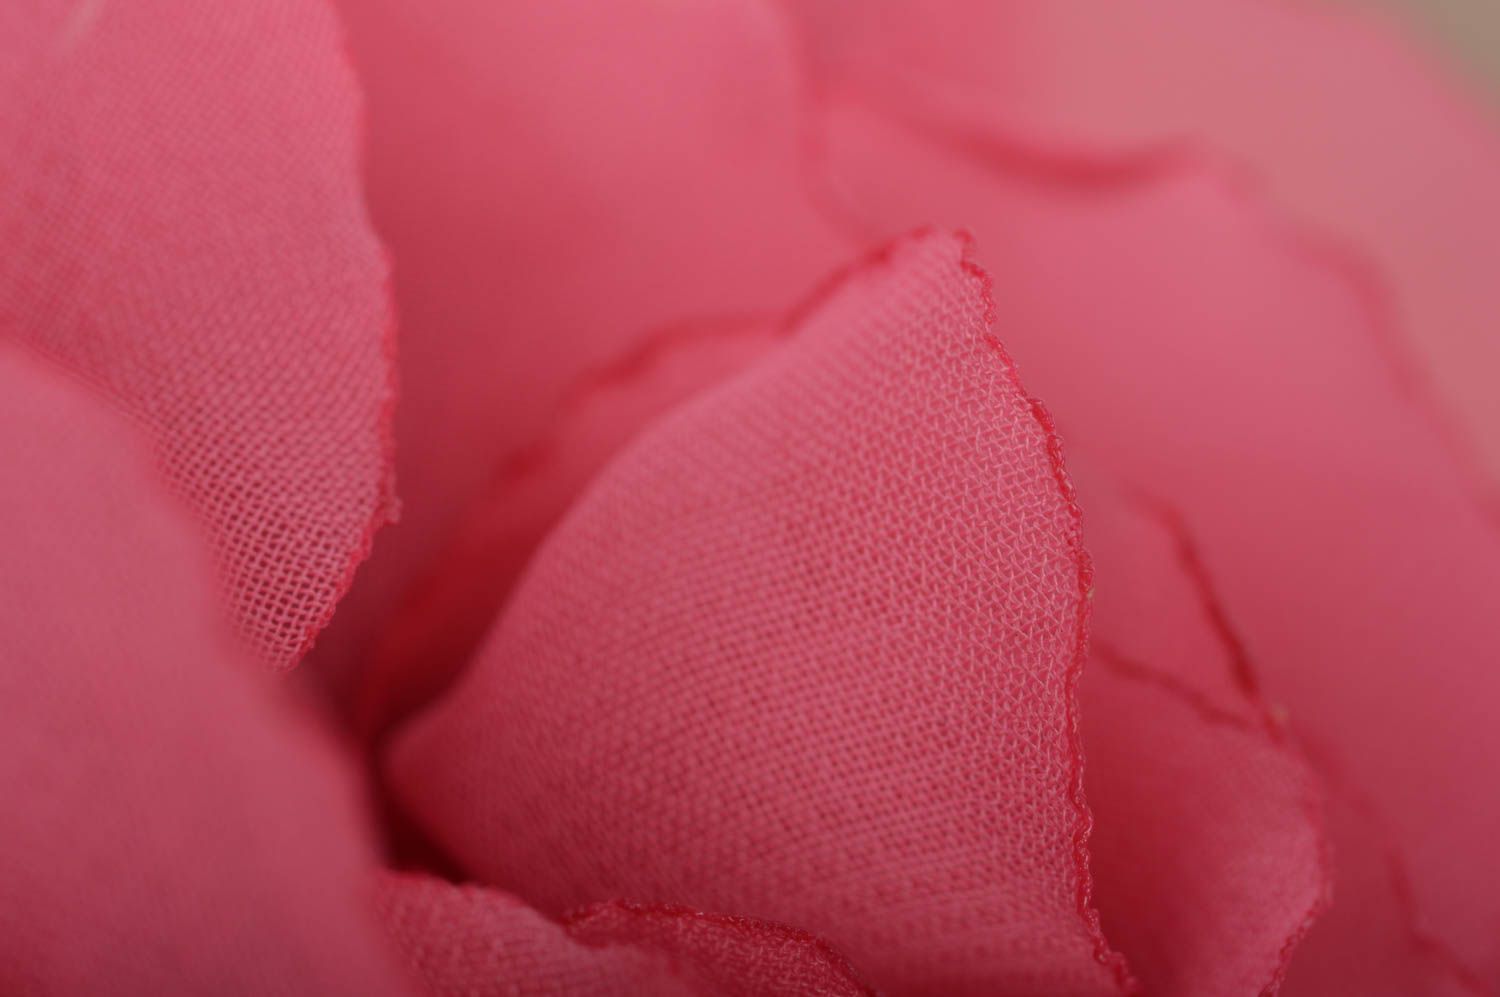 Брошь заколка в виде цветка пиона пышная розовая красивая нарядная ручной работы фото 5